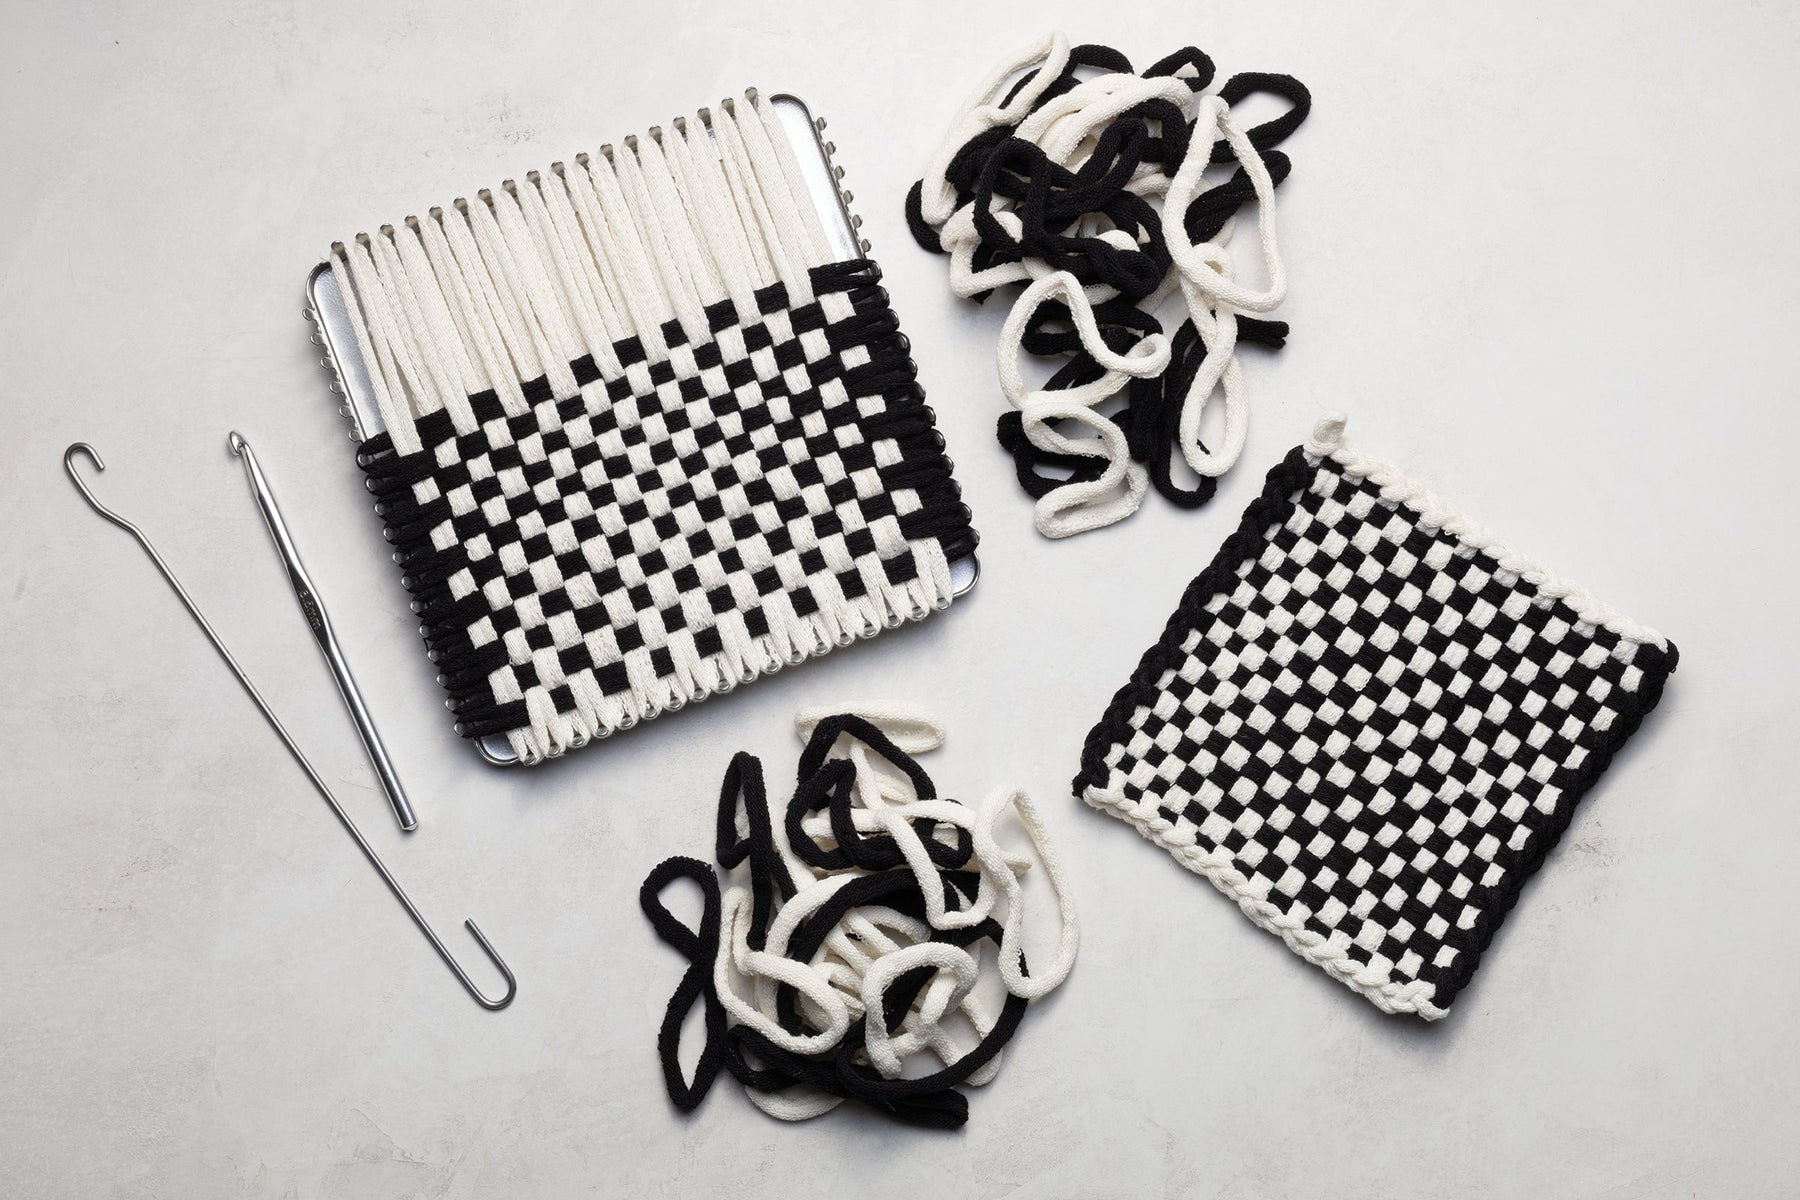 Aluminum Crochet Hook for Potholder Kits – Harrisville Designs, Inc.